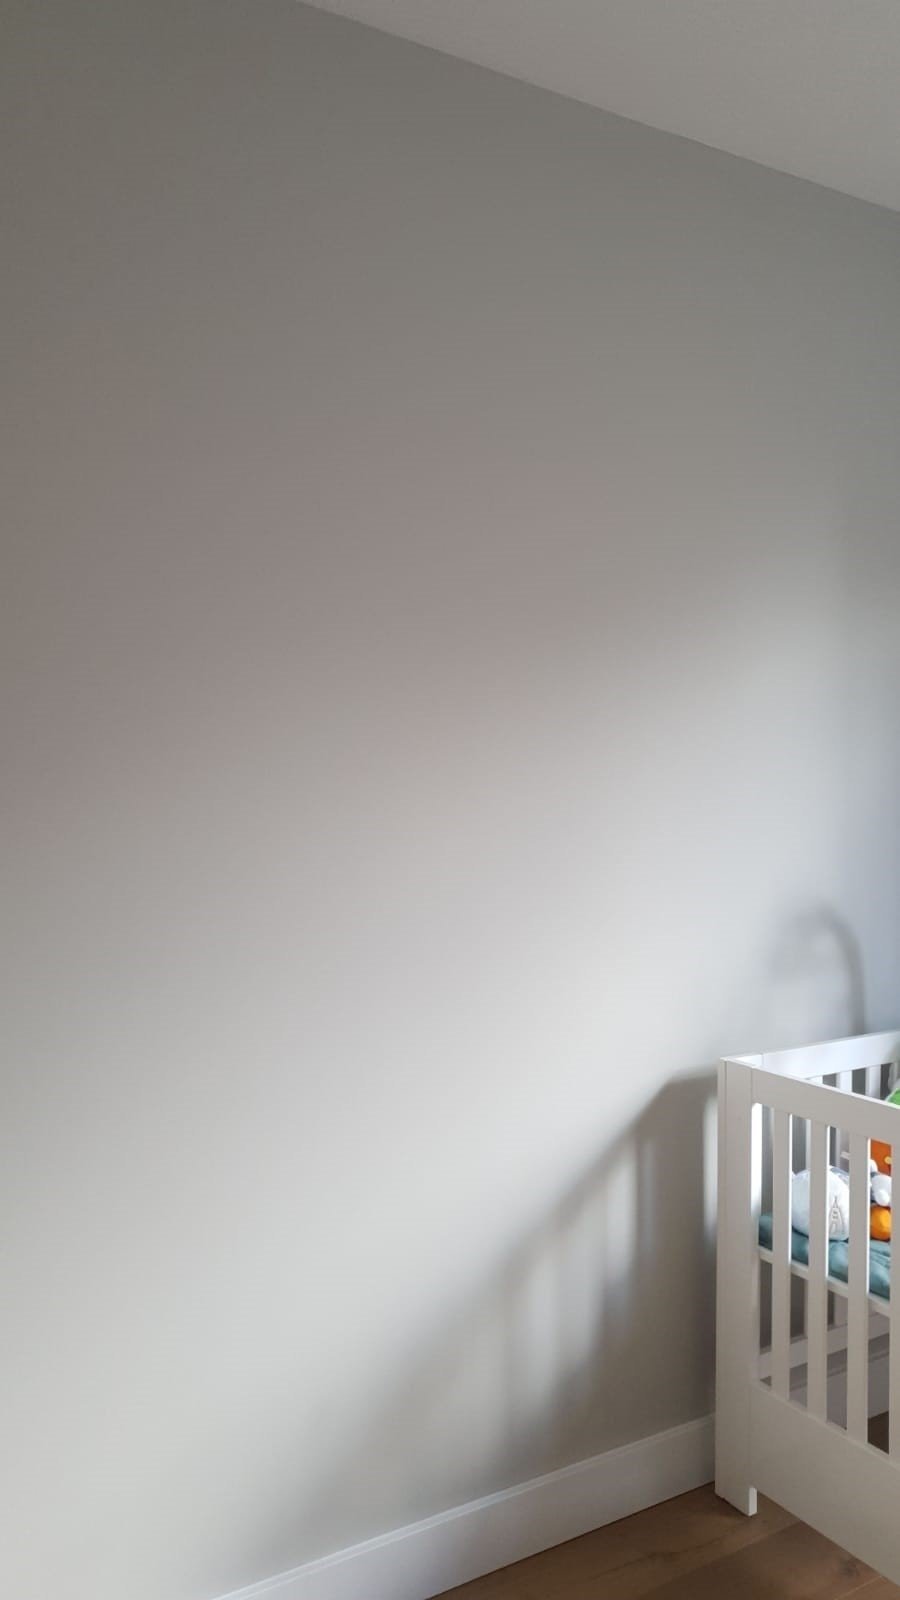 De-Haan-Onderhoud-Stukadoor-Stucwerk-gladde-wand-woonkamer-afwerking-schilderen-grijze-kleur